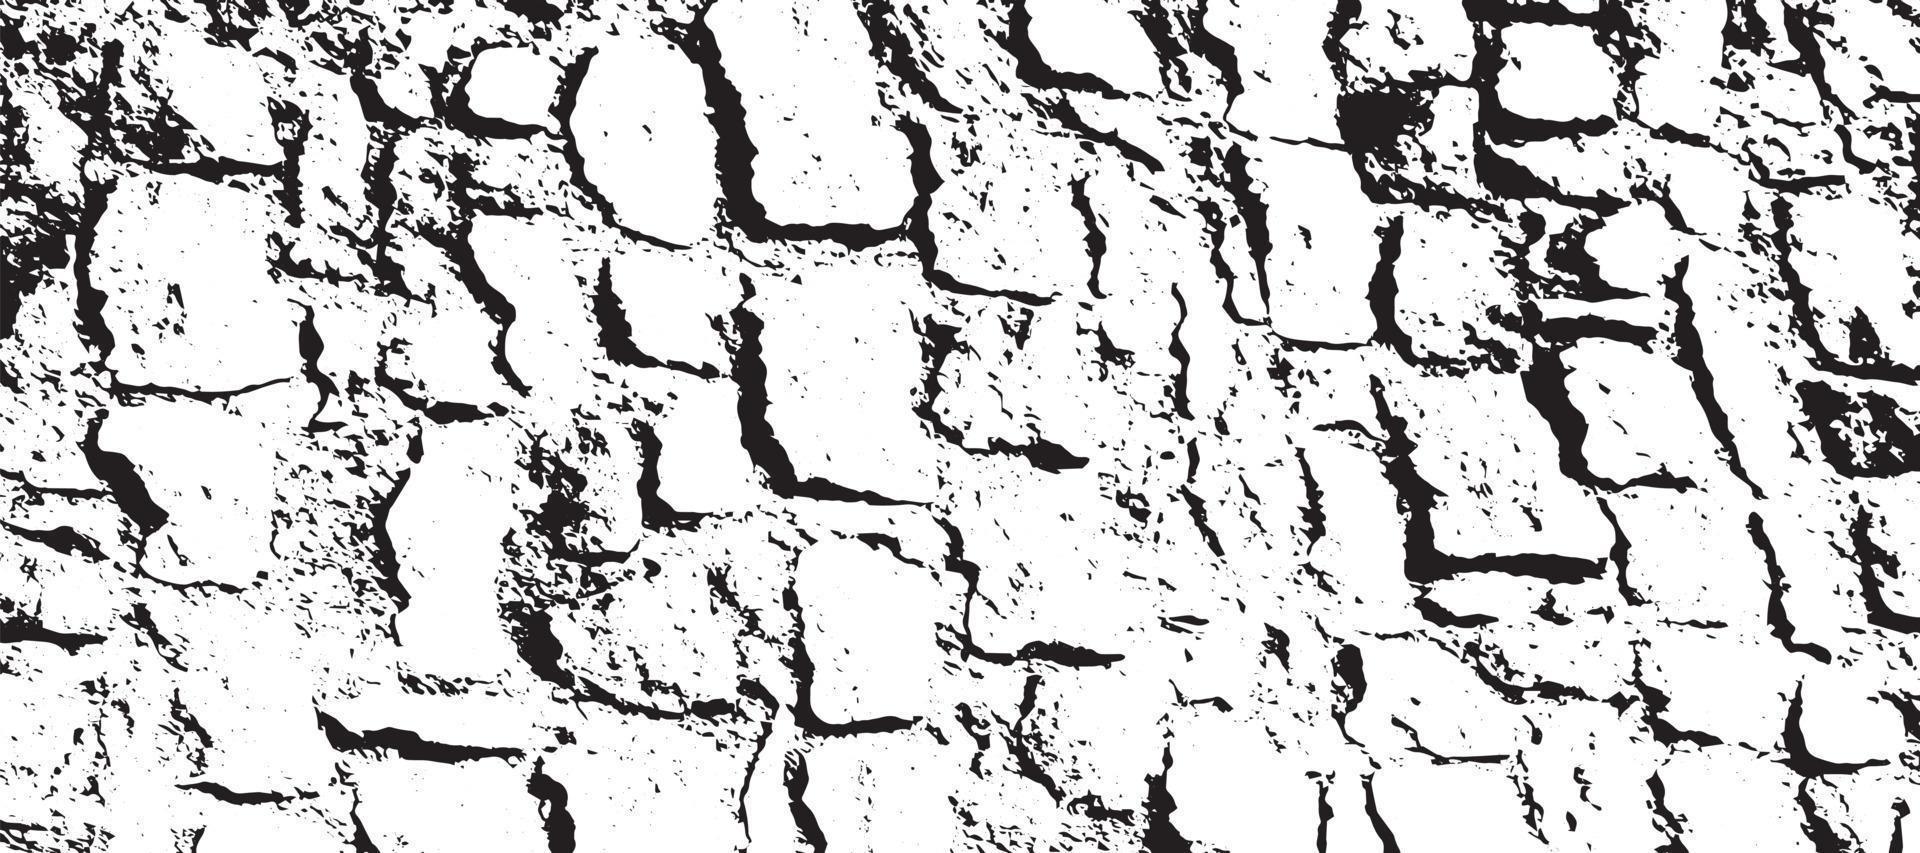 textura grunge en blanco y negro. fondo de superposición de angustia. textura de grano de polvo sobre fondo blanco. diseños y formas abstractas. viejo patrón vintage desgastado. fondo monocromo. textura arenosa. vector